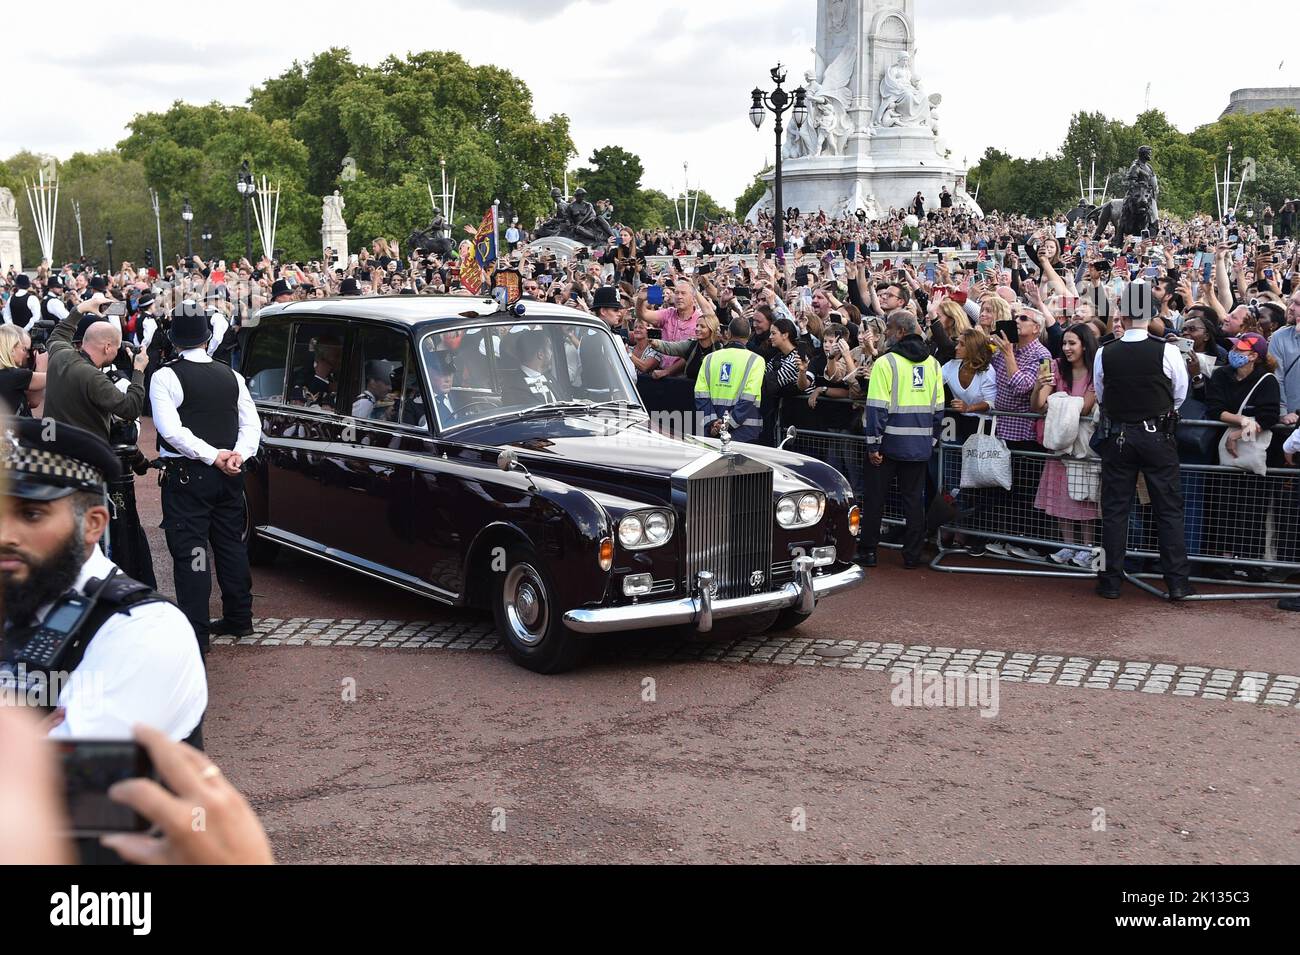 Riesige Menschenmengen jubelten, als König Charles III. Zum ersten Mal als Monarch in einem staatlichen Rolls-Royce neben Camilla, dem Queen Consort, am Buckingham Palace eintraf. Stockfoto